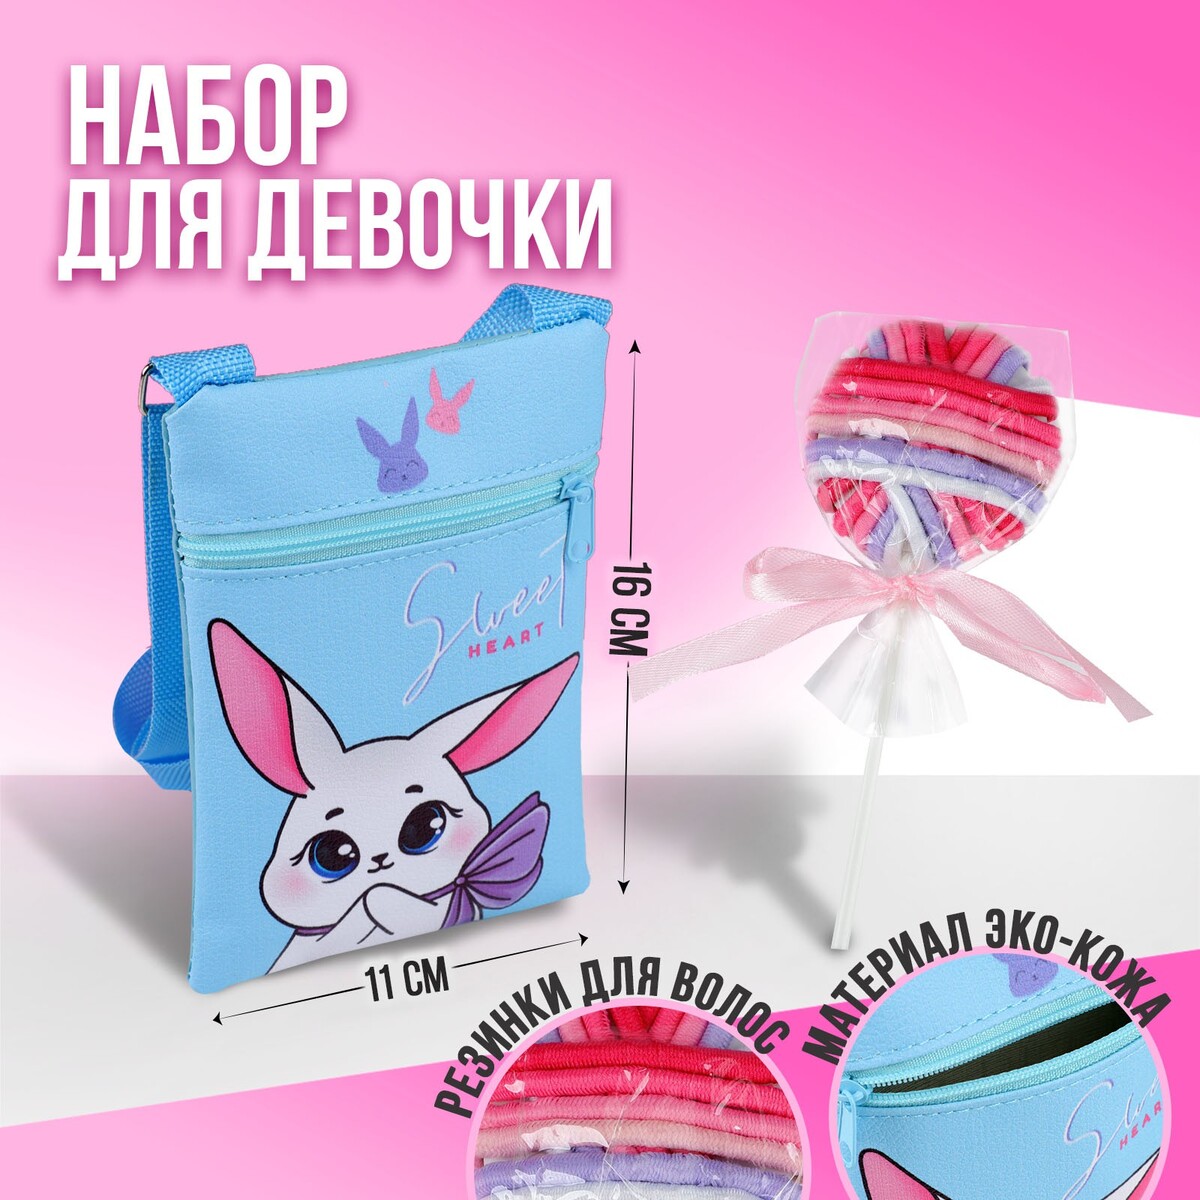 Набор для девочки белый зайчик: сумка и резинки для волос, цвет голубой/розовый девочки лета